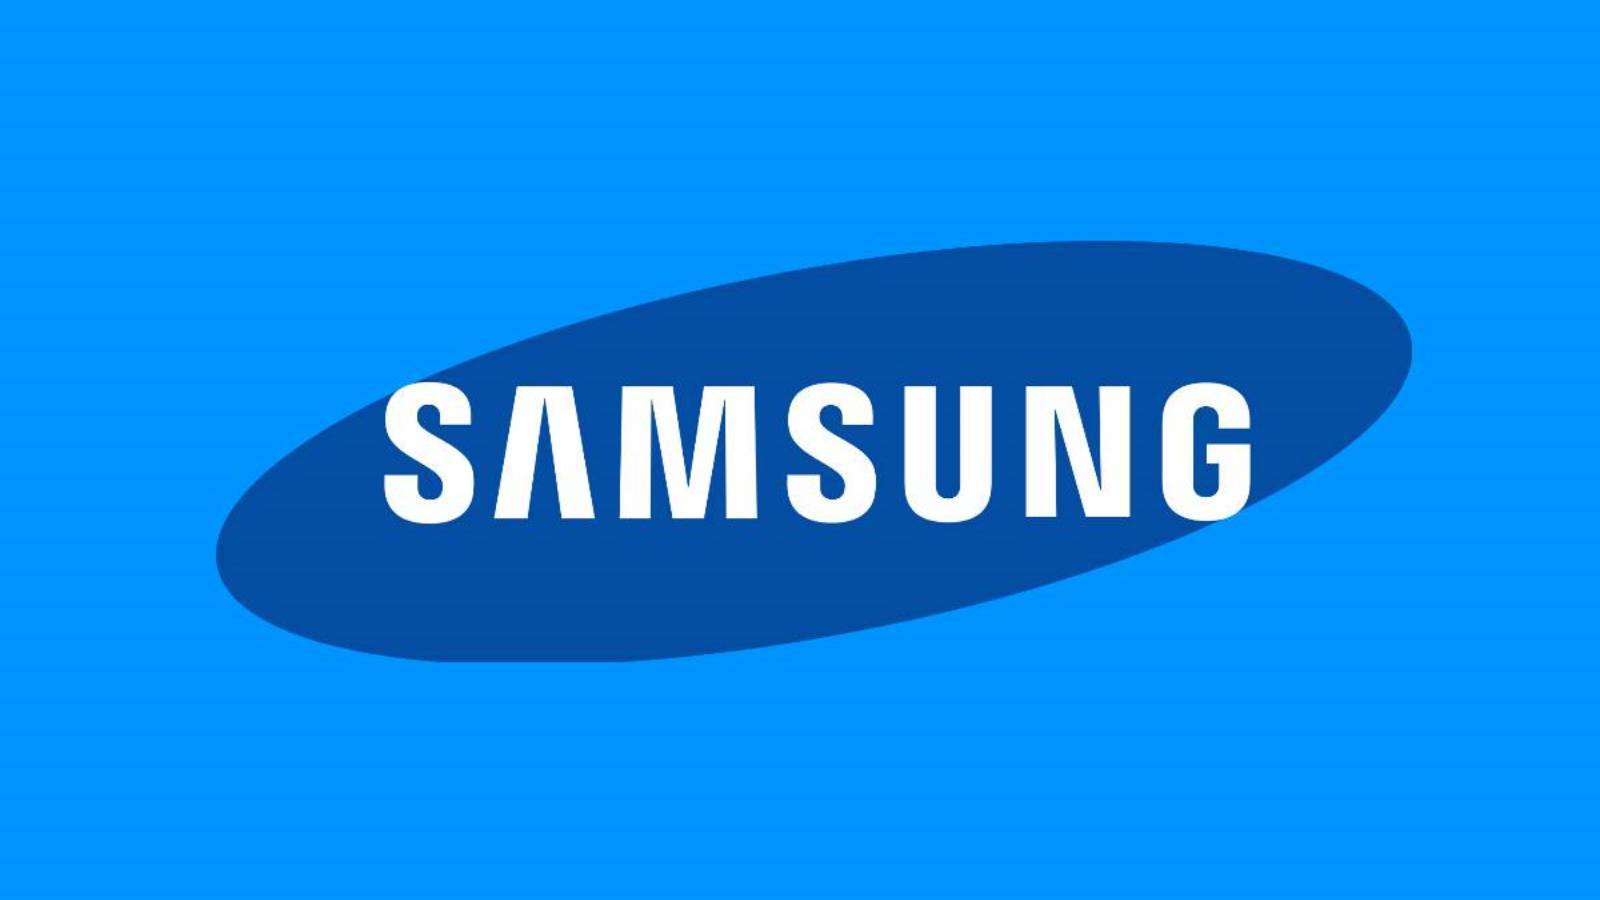 Samsung ogłasza niezwykle ważną ŚWIATOWĄ PREMIERĘ